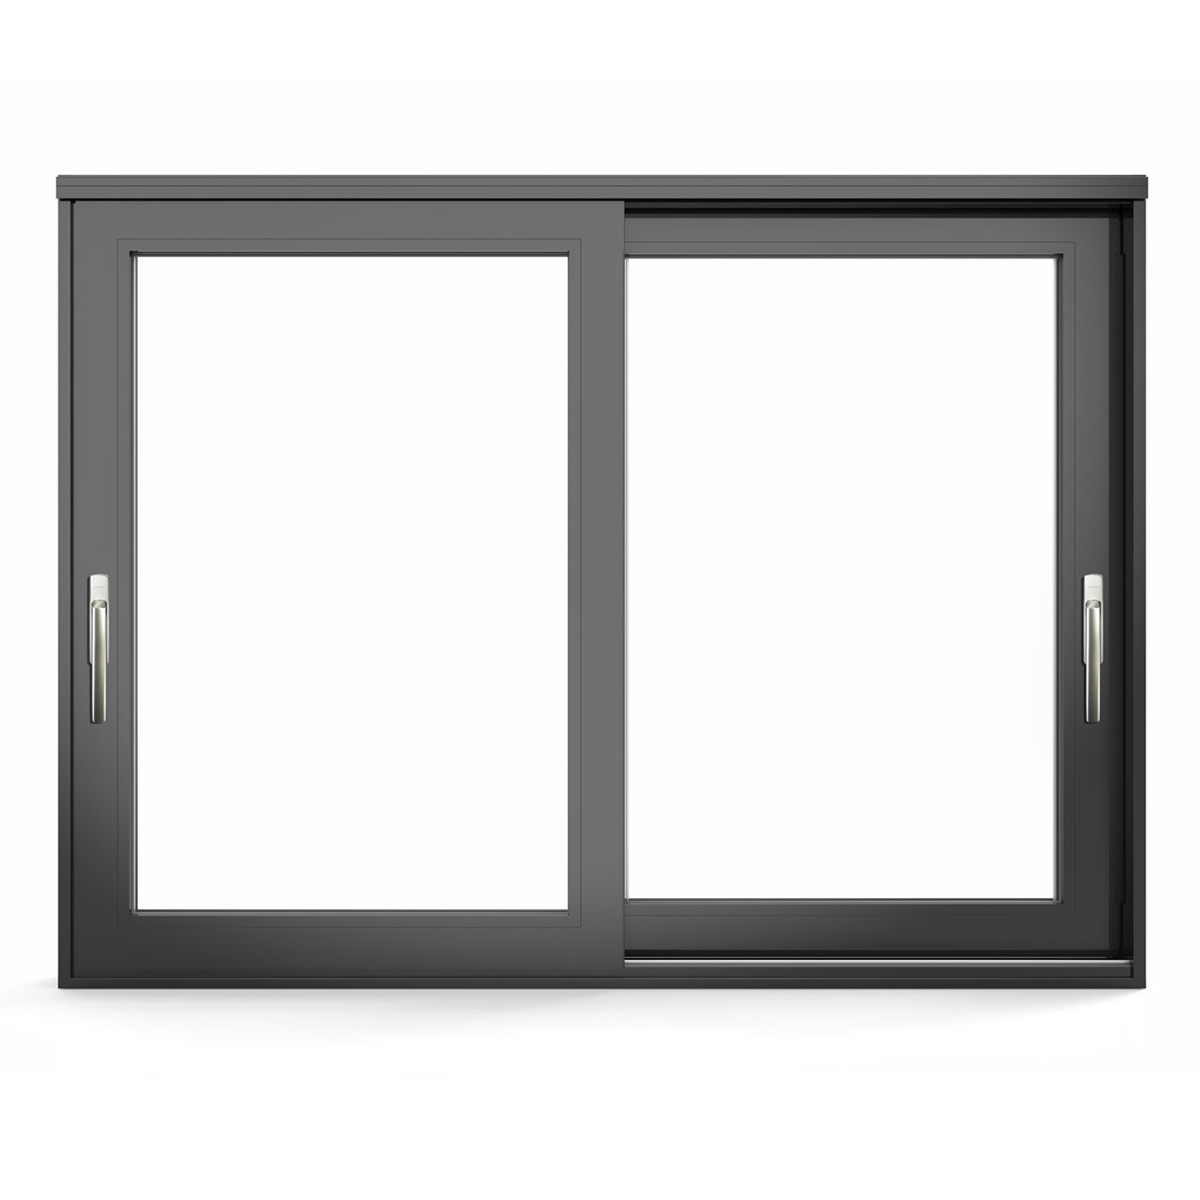 Puerta corrediza de vidrio con marco delgado
